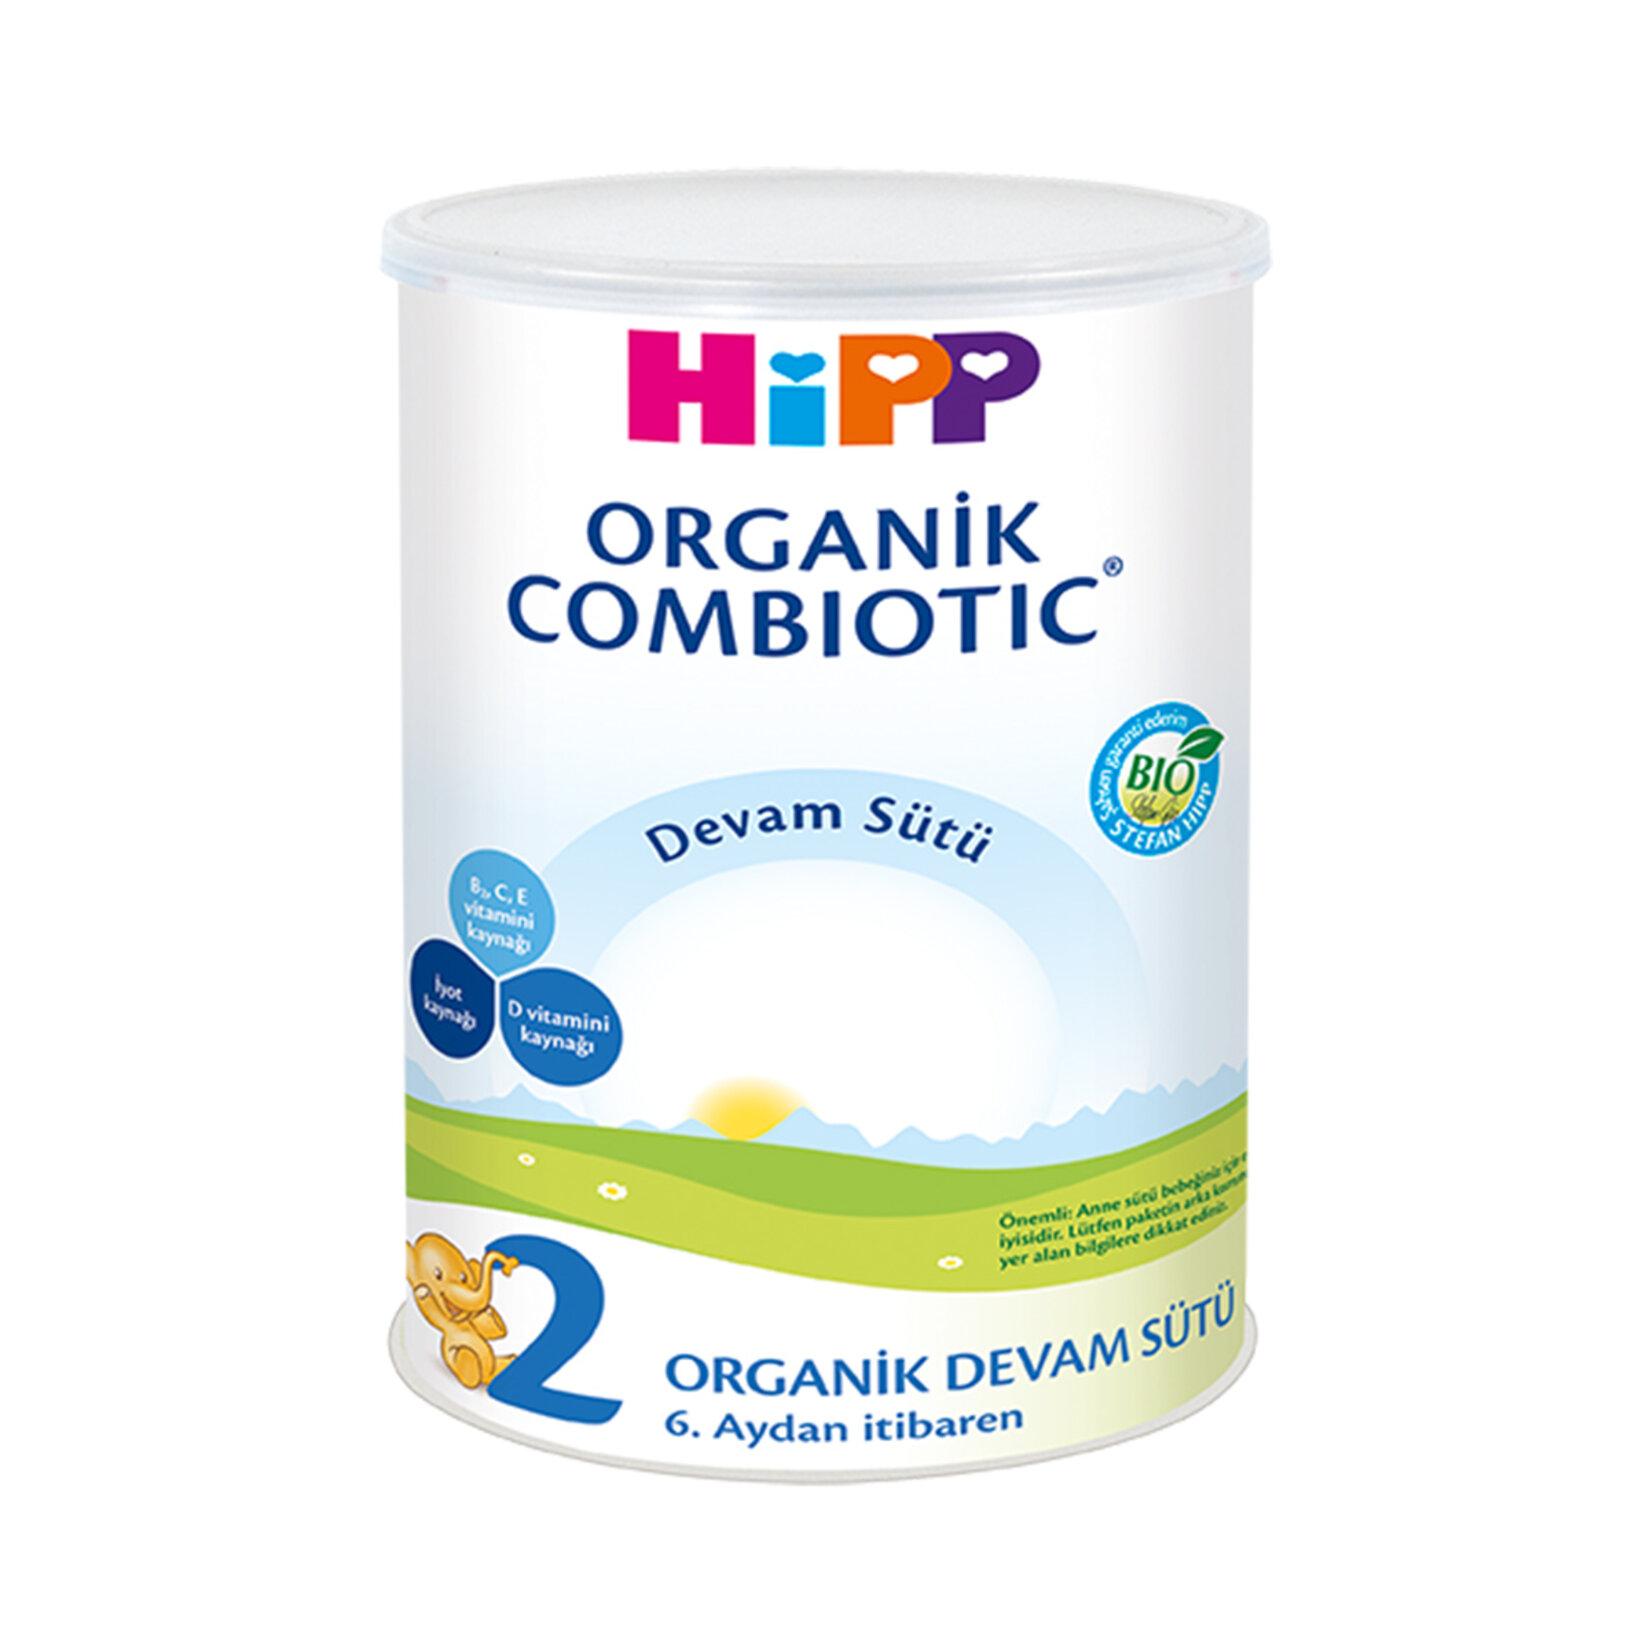 Hipp 2 Organik Combiotic Devam Sütü 350 gr 3'lü Paket